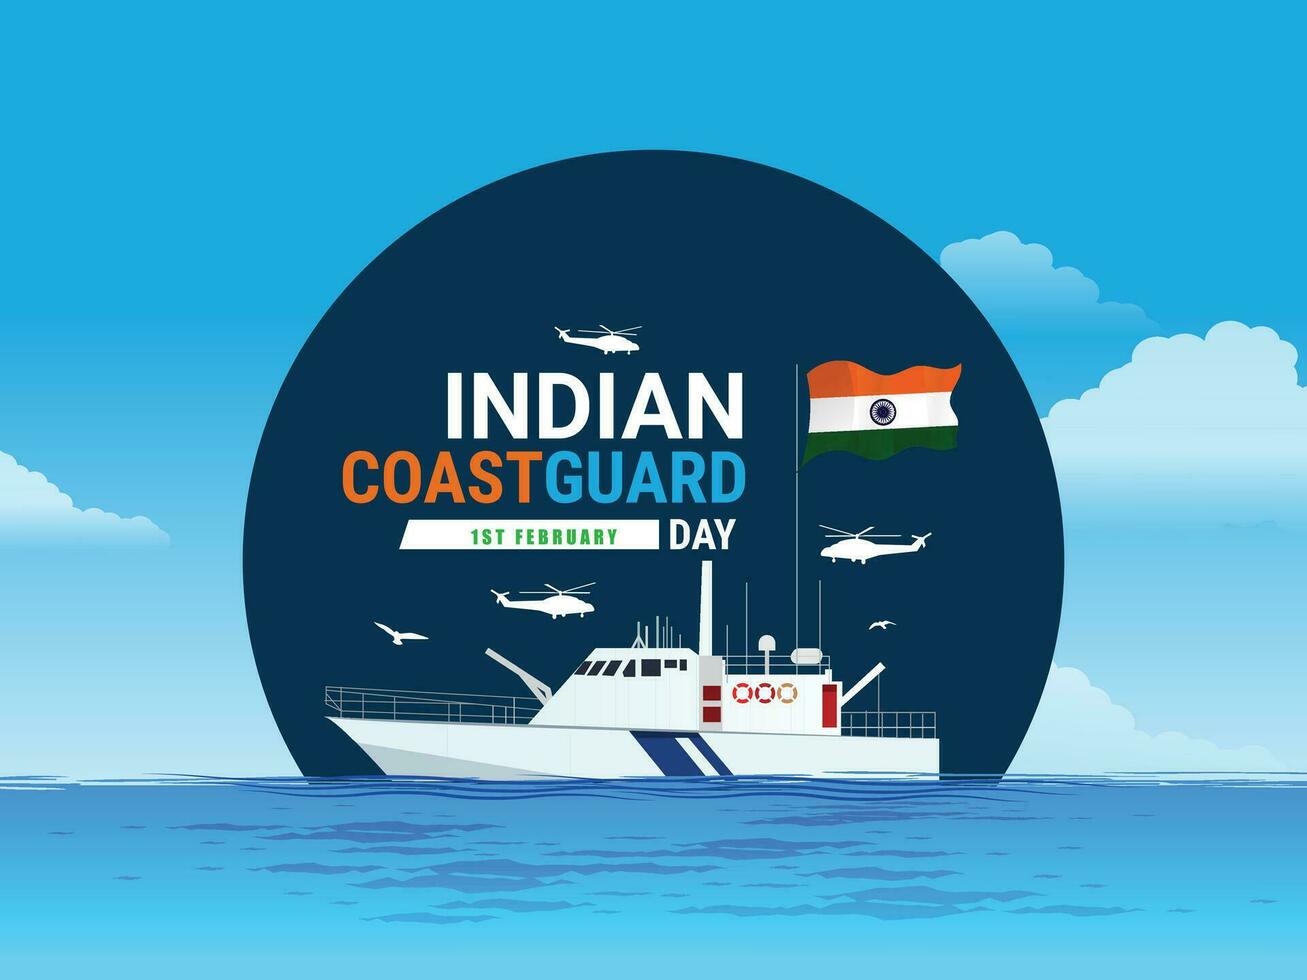 Indien côte garde journée est observé sur 1 février chaque année à honneur le important rôle cette le organisation pièces modifiable vecteur illustration, Indien côte garde patrouiller surveillance bateaux